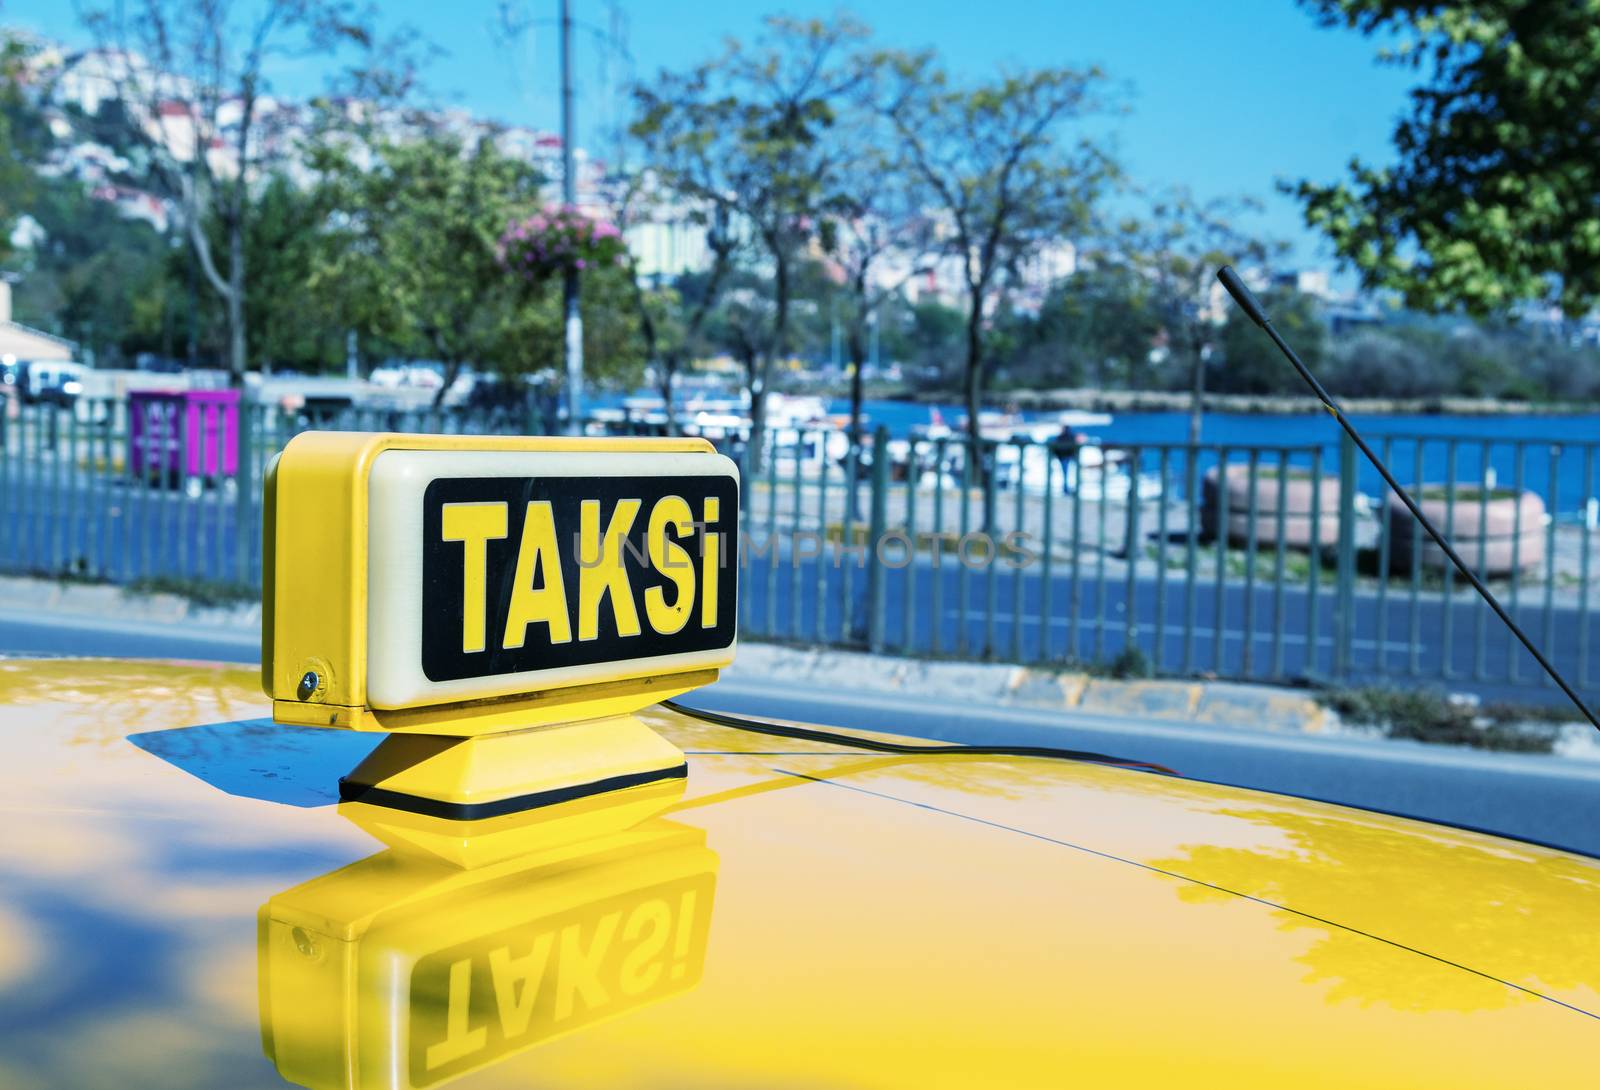 Taksi sign in Istanbul.